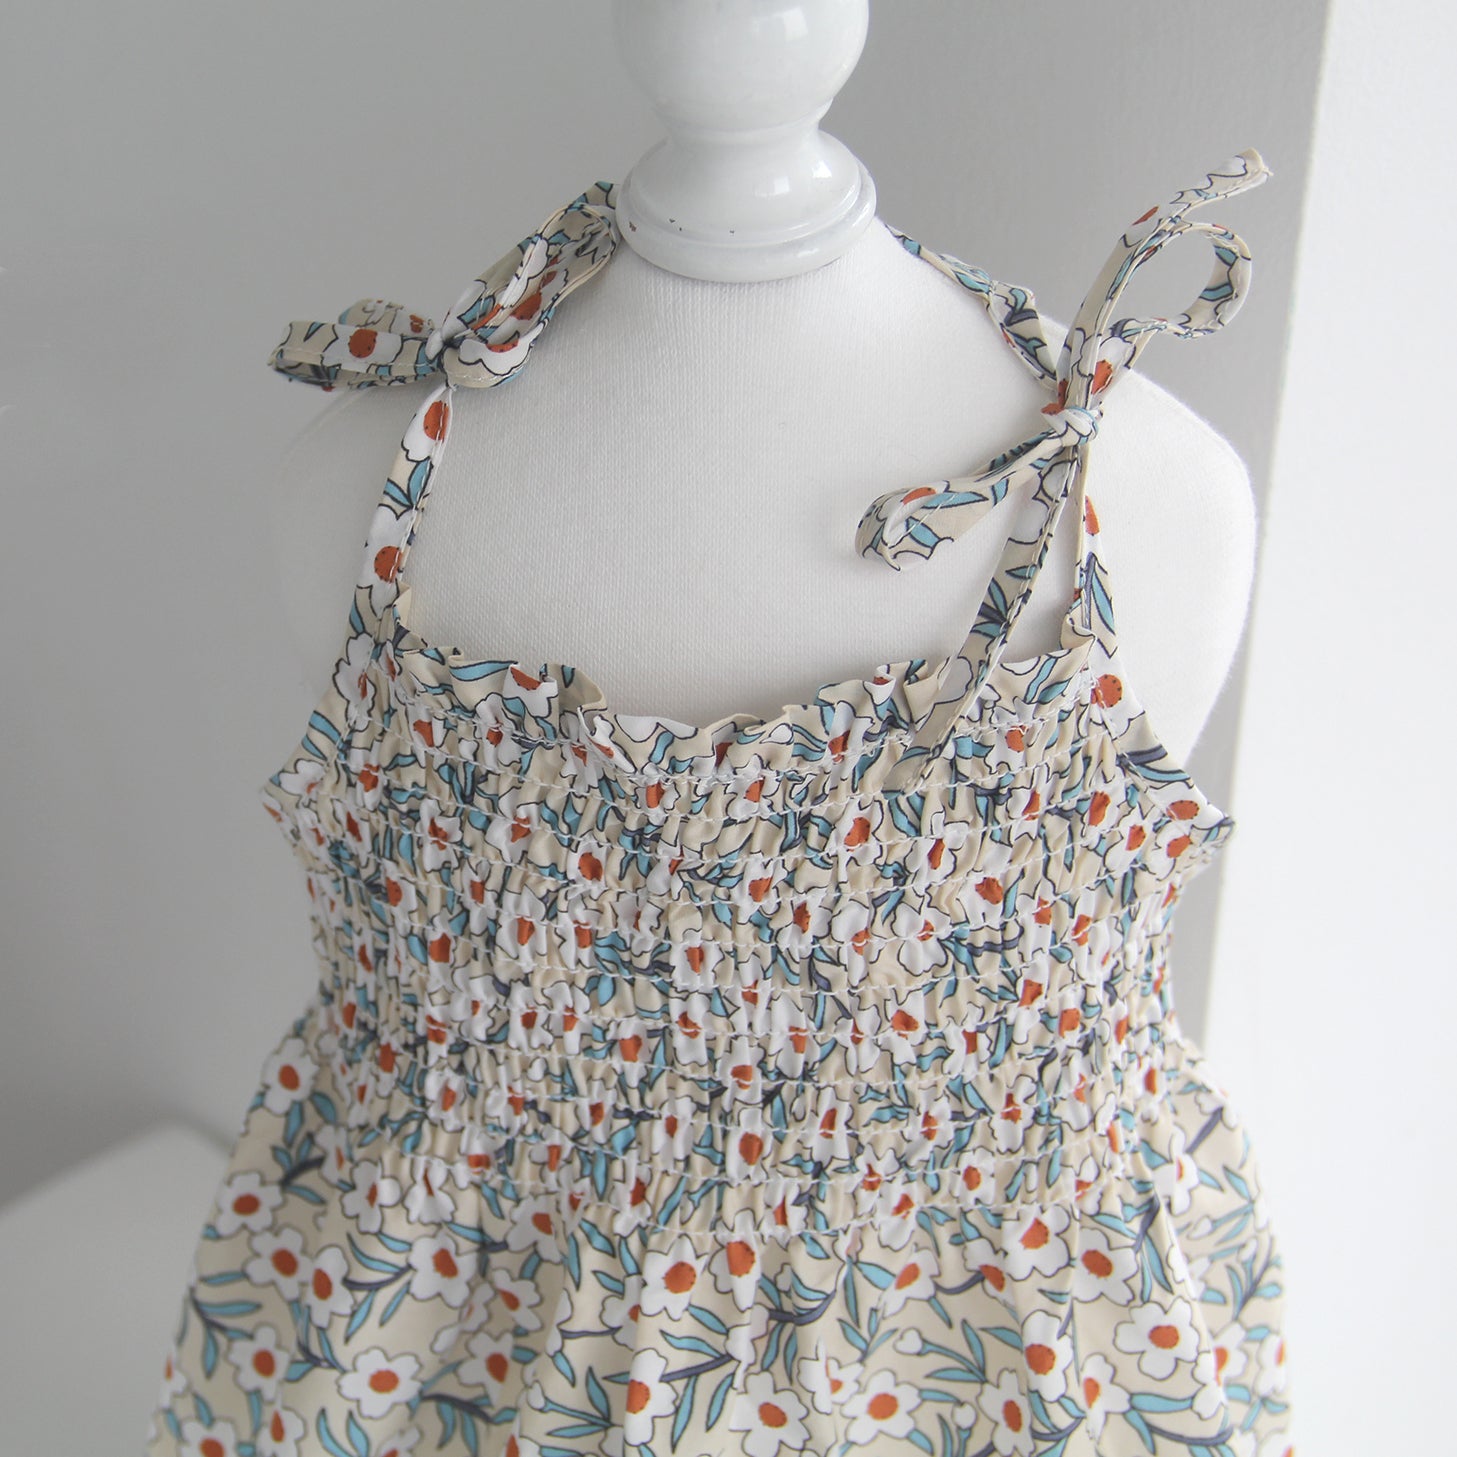 Summer Stretchy Sling Dress (Light Blue/Floral)